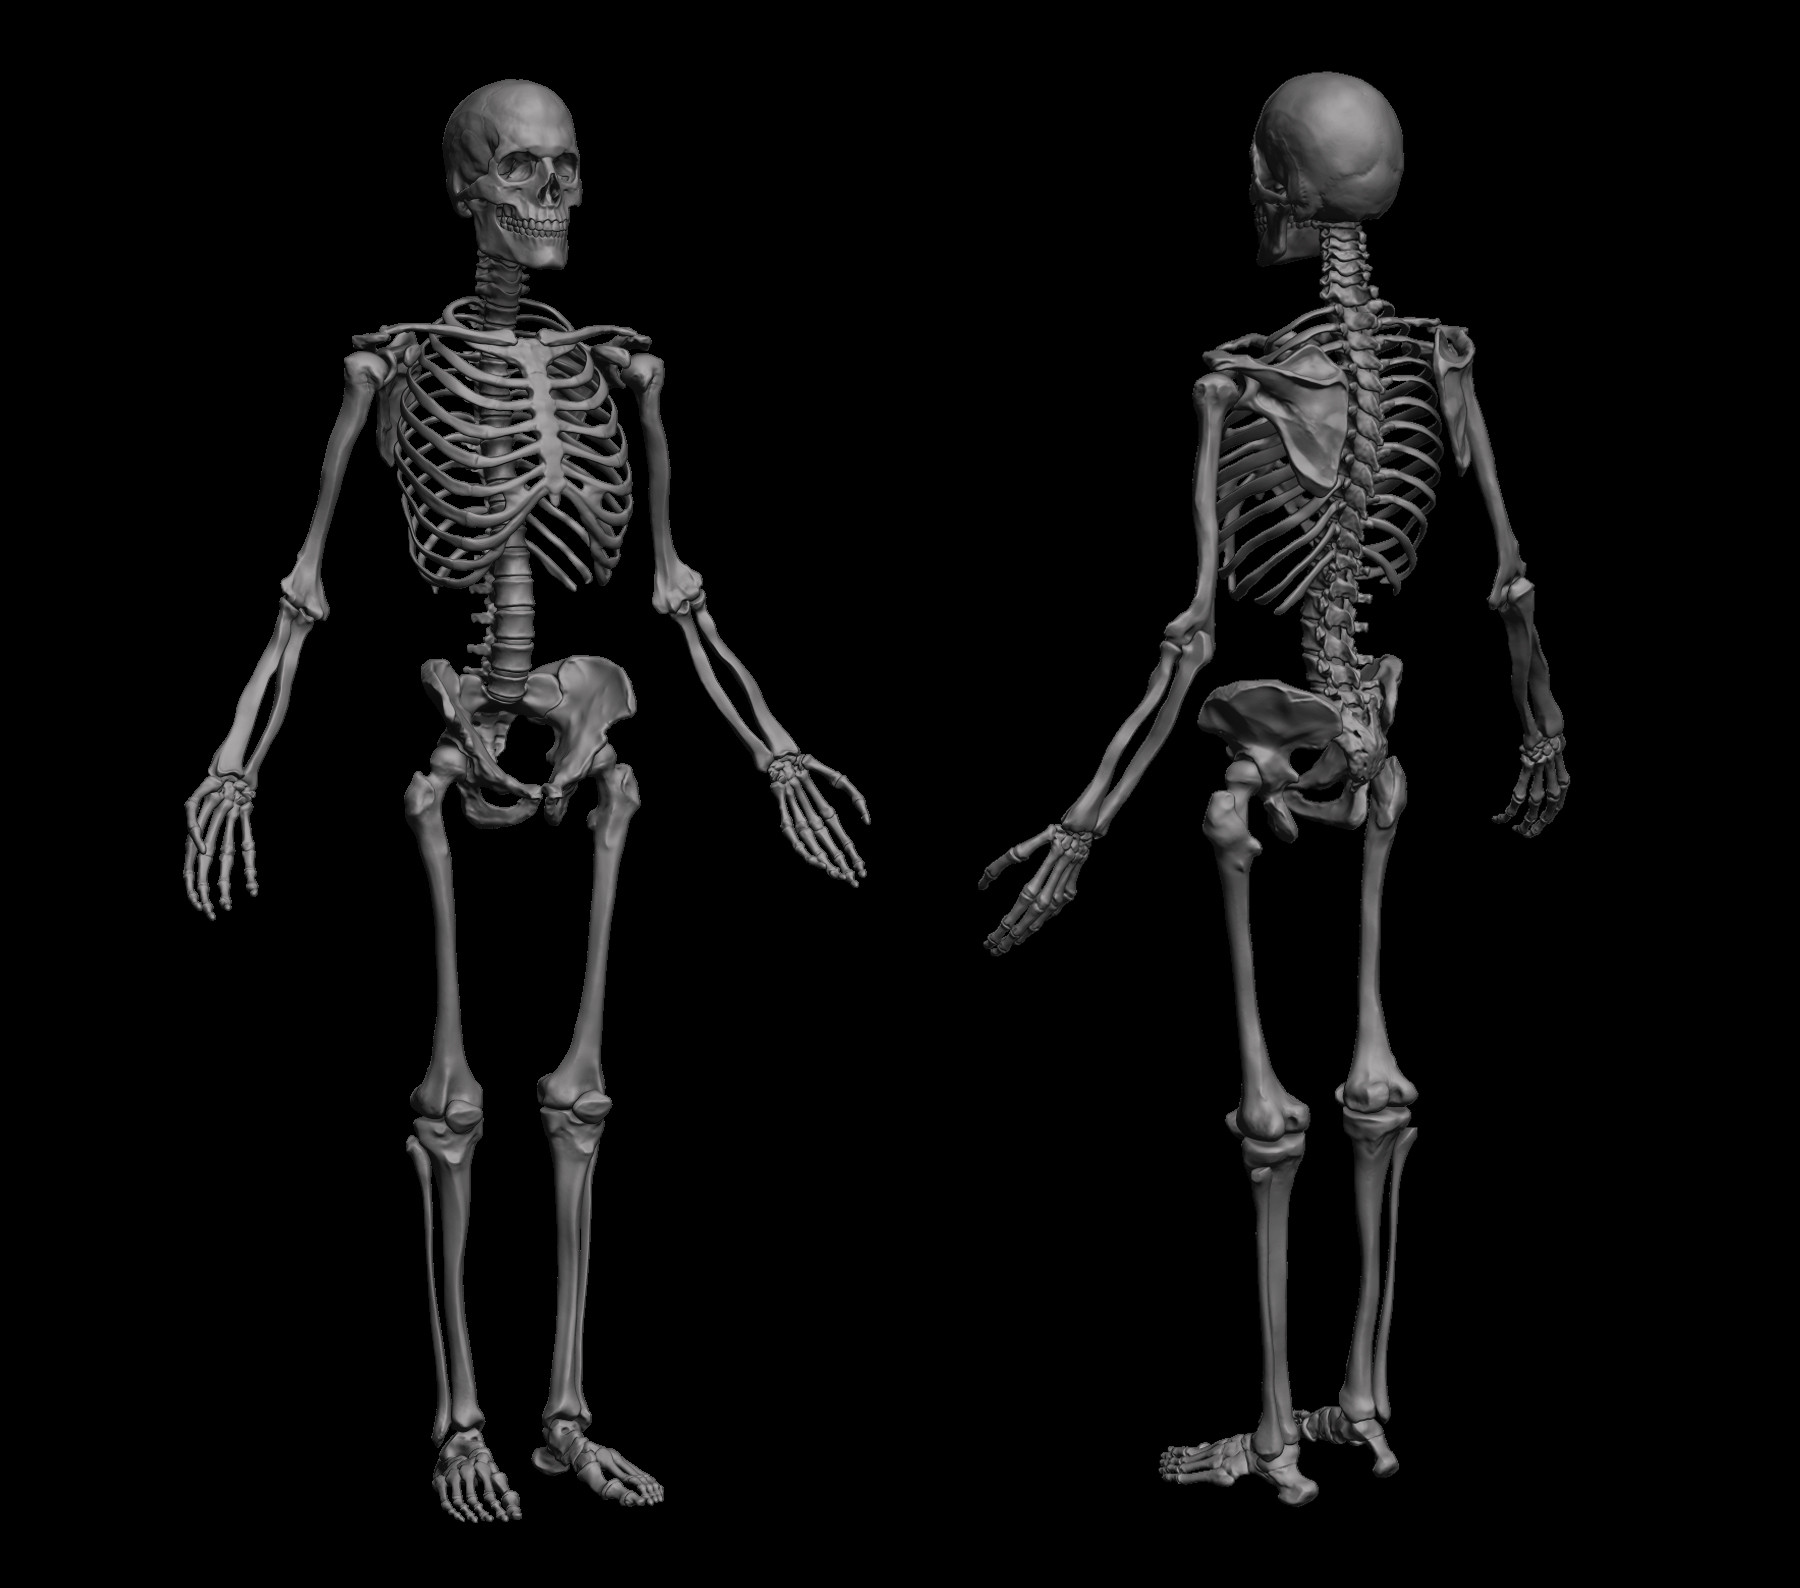 ArtStation - Anatomical Human Skeleton | Resources